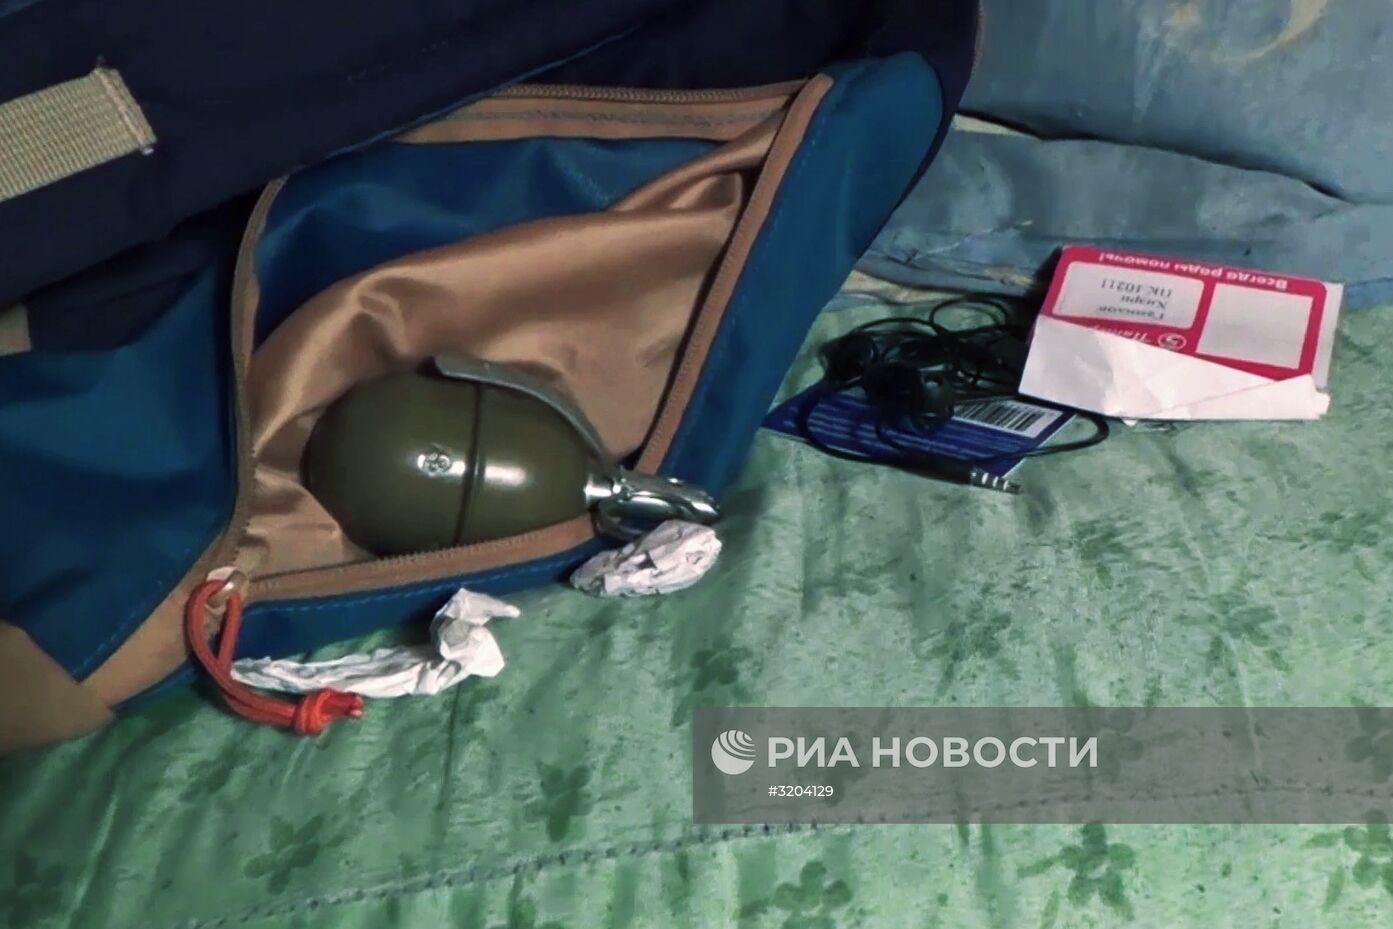 В Подмосковье задержали боевиков ИГ (террористическая организация, запрещена в России), готовивших теракты